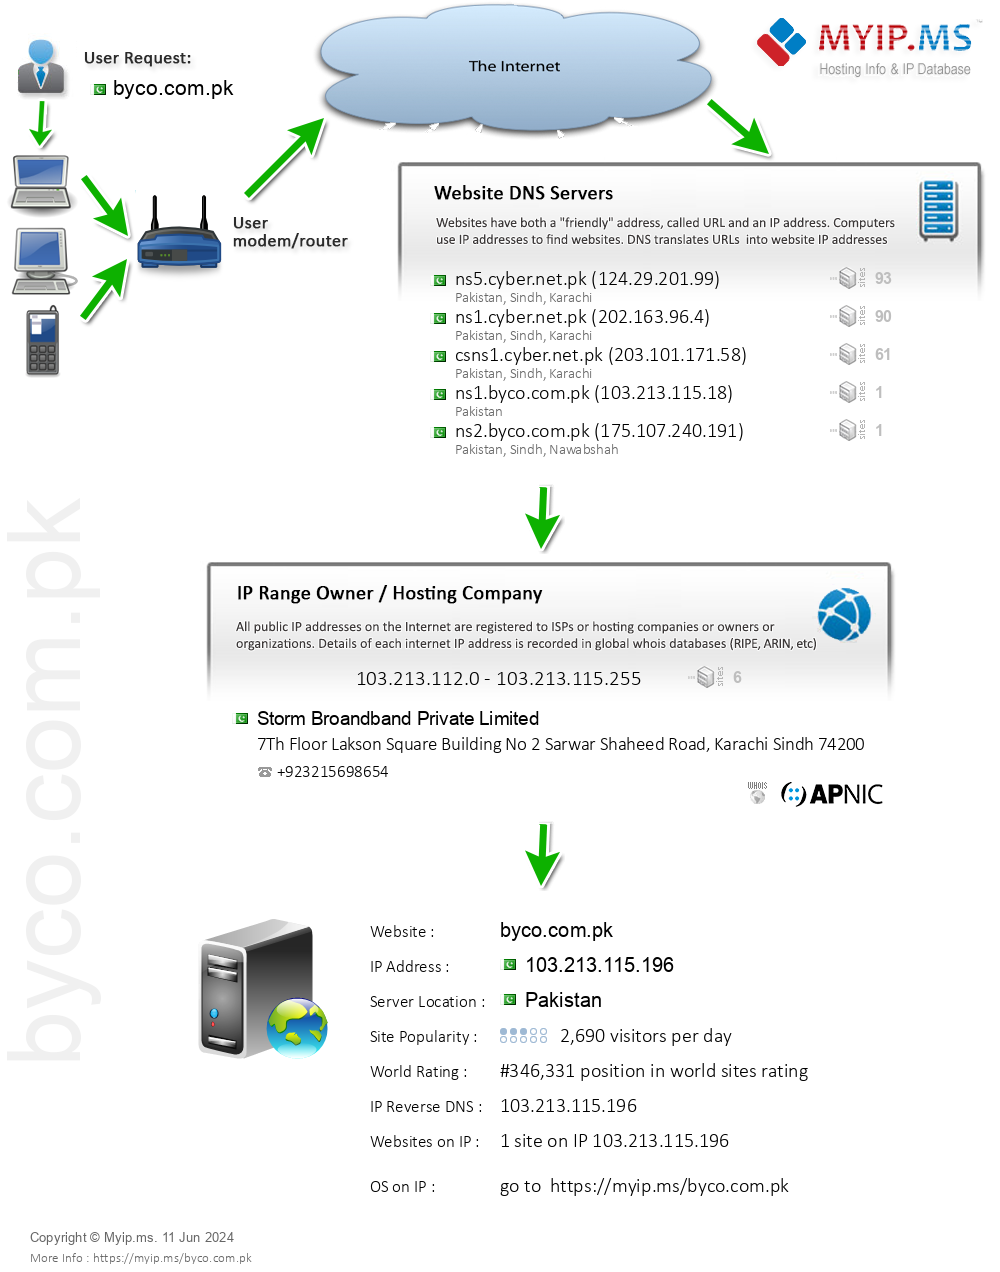 Byco.com.pk - Website Hosting Visual IP Diagram